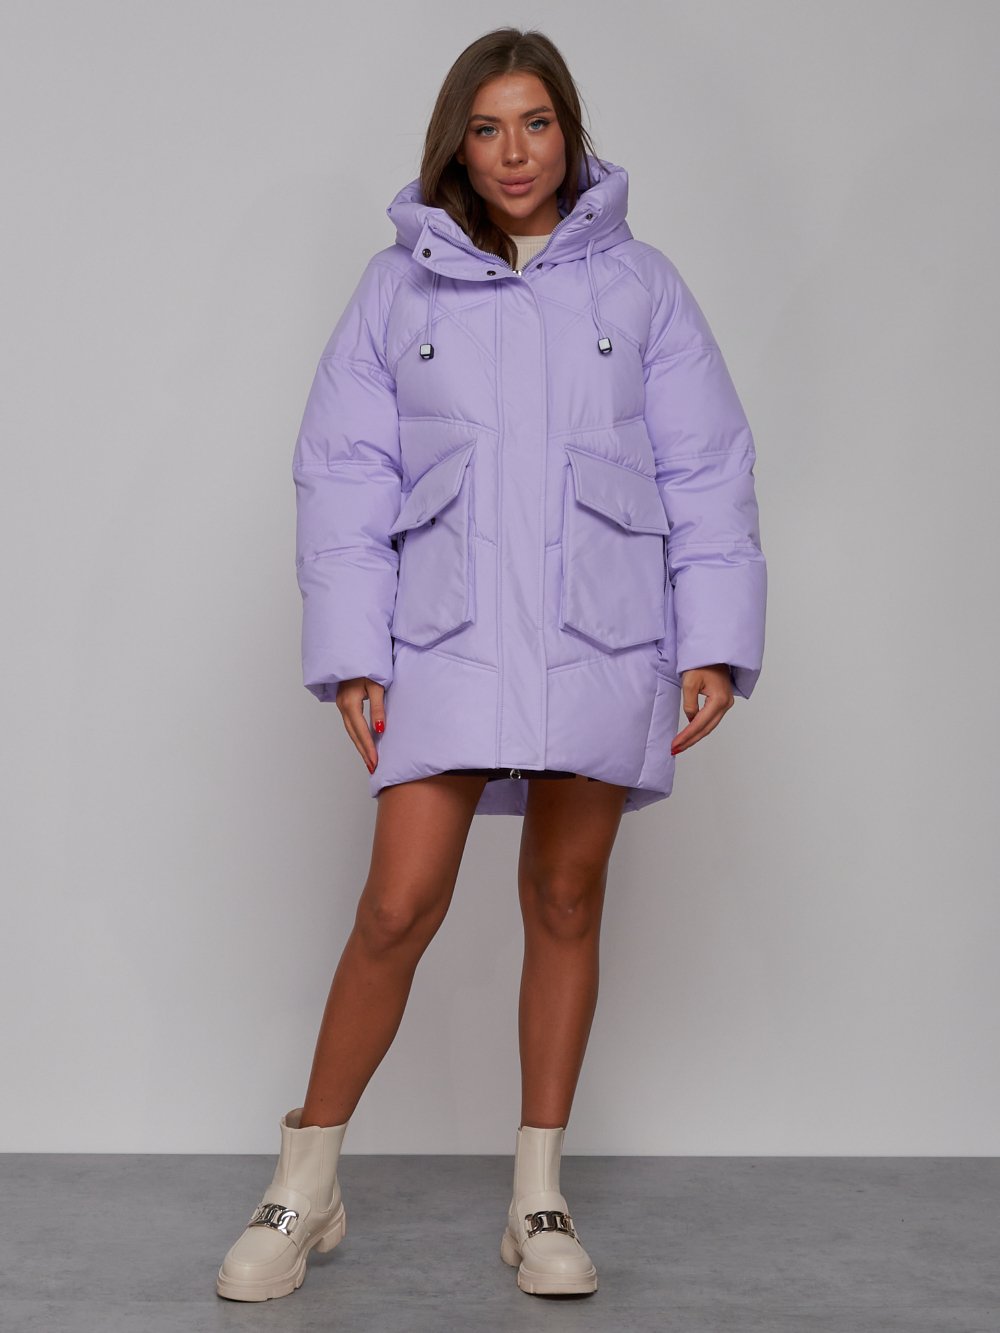 Купить оптом Зимняя женская куртка модная с капюшоном фиолетового цвета 52310F в Казани